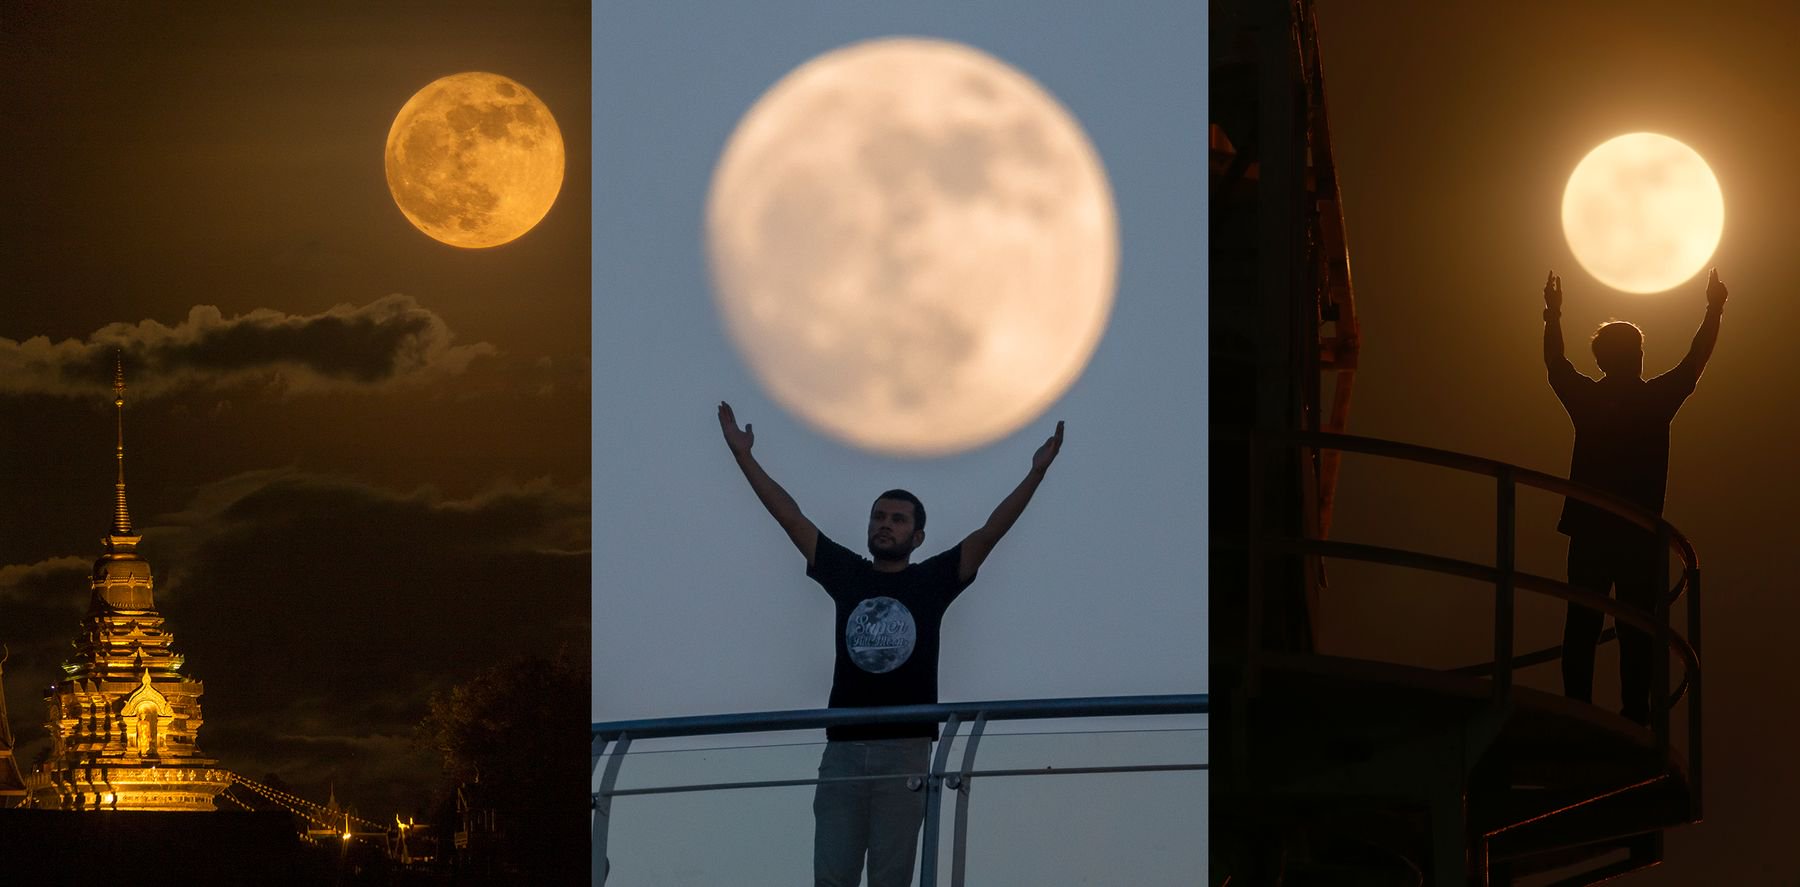 พร้อมถ่ายภาพ Super Moon 3 เดือนติดกัน ในคืนวันพระจันทร์เต็มดวง